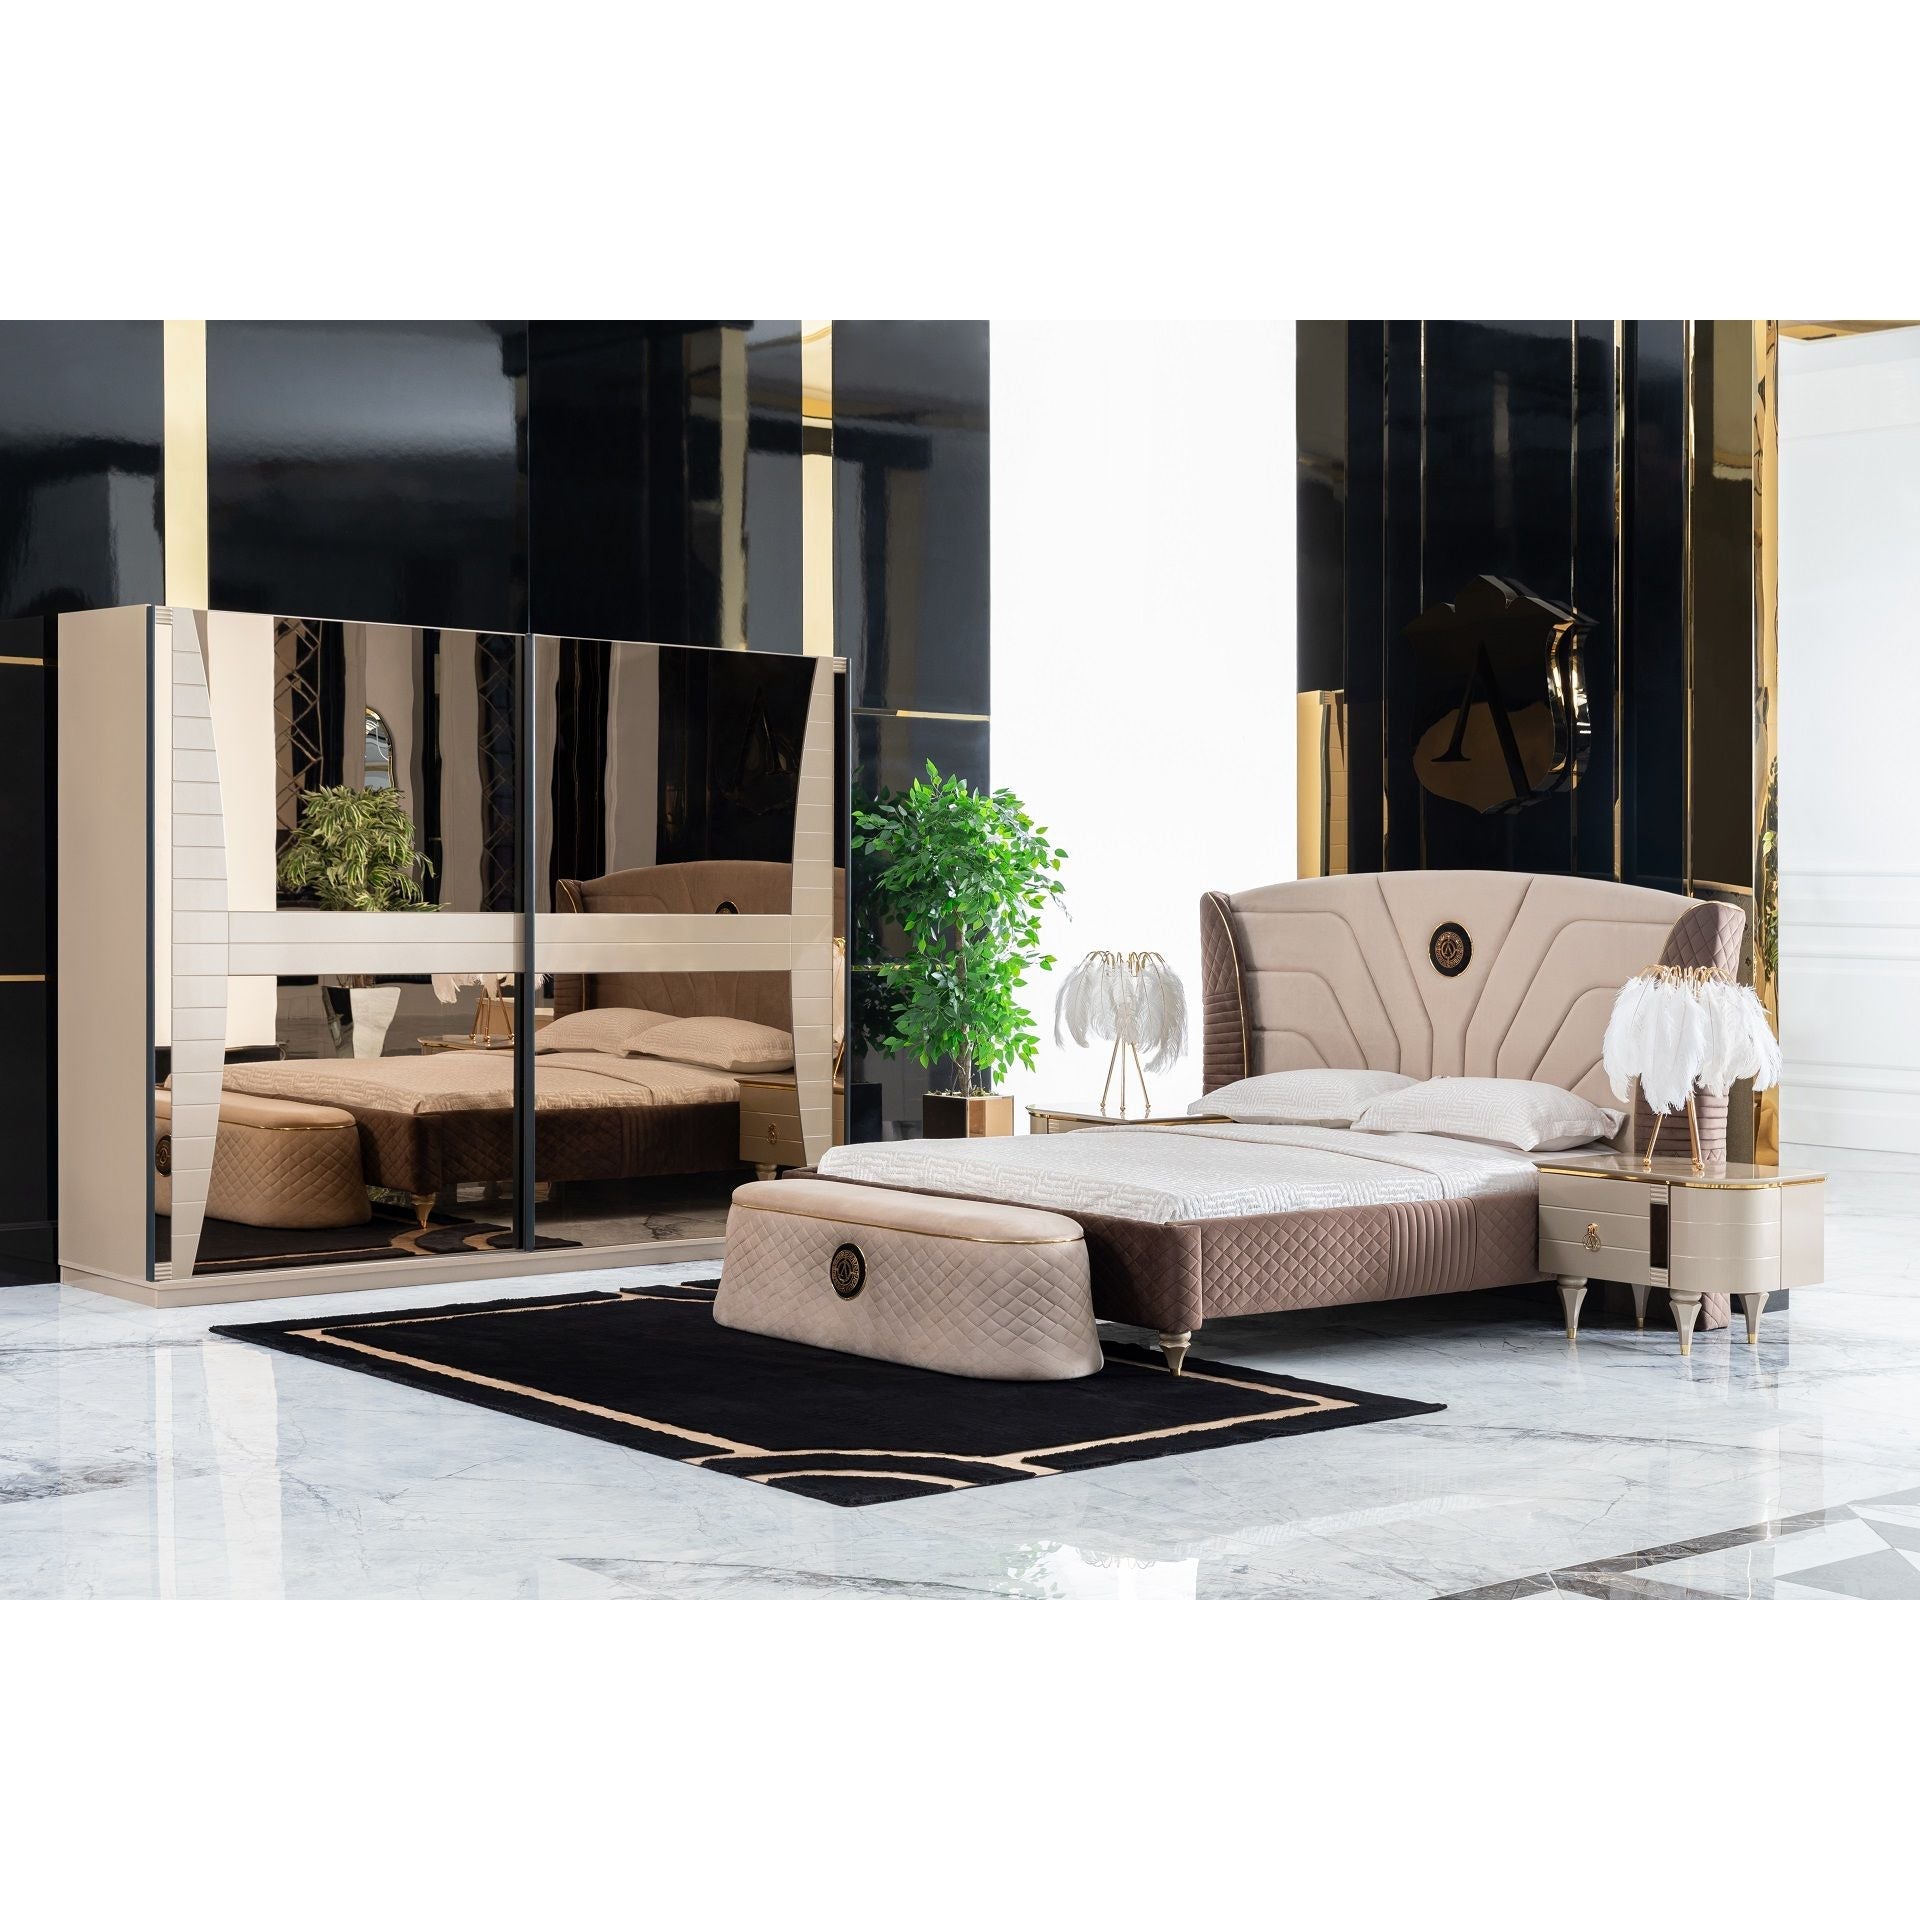 Victoria Säng - LINE Furniture Group